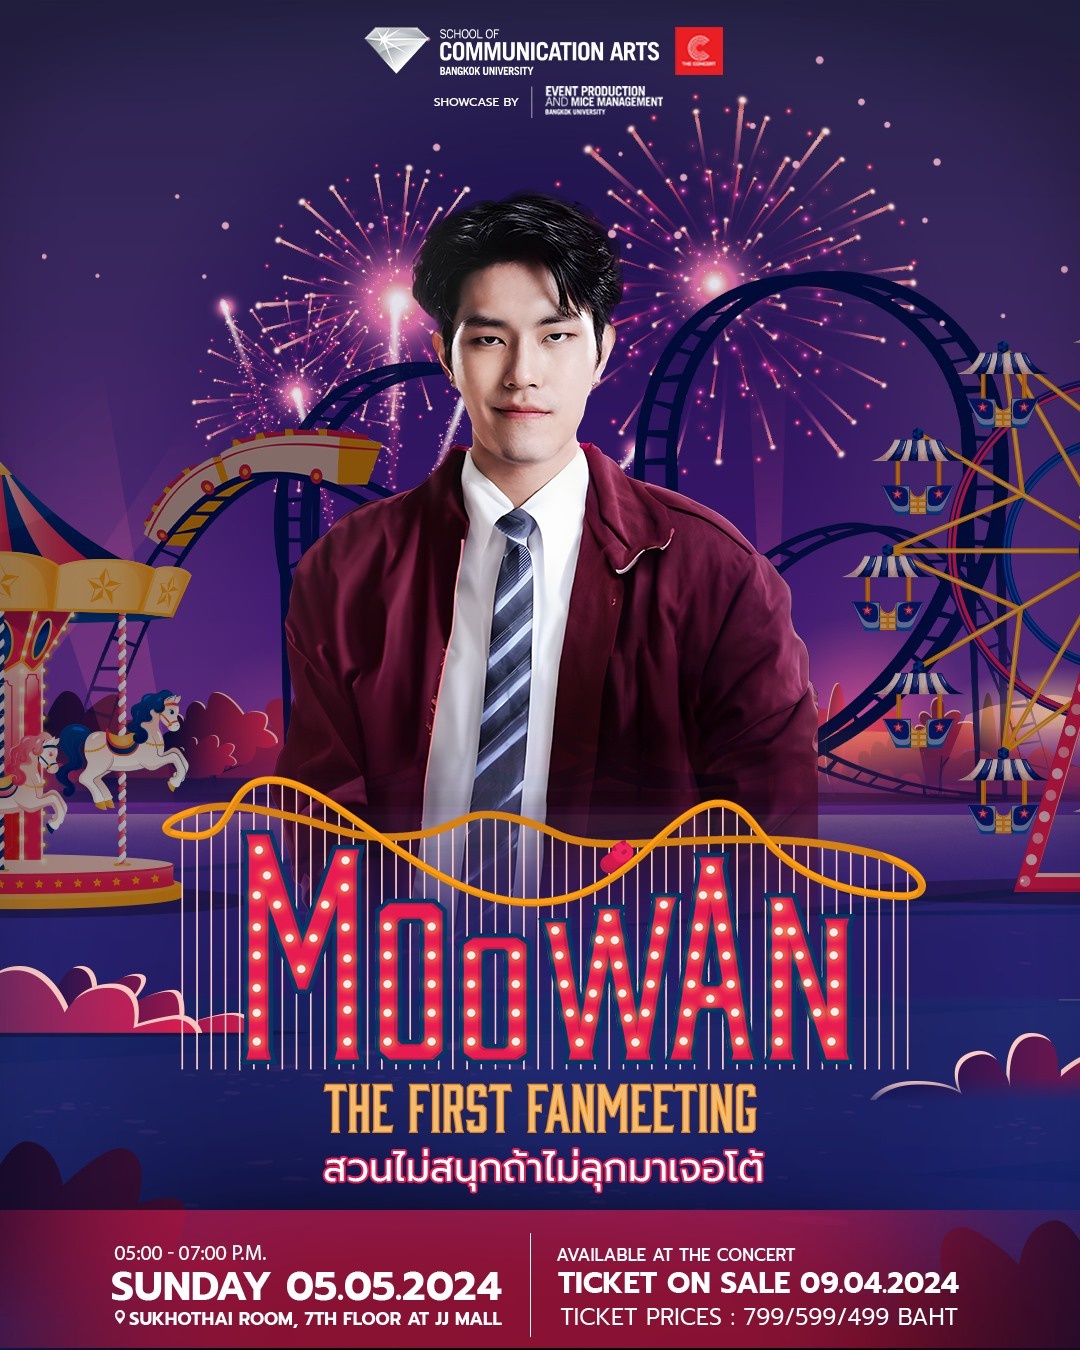 เชิญพบกับ Fanmeeting ครั้งแรก! ของ หมูหวาน-เมธาสิทธิ์ ใน MOOWAN THE FIRST FAN MEETING Showcase by EVENT